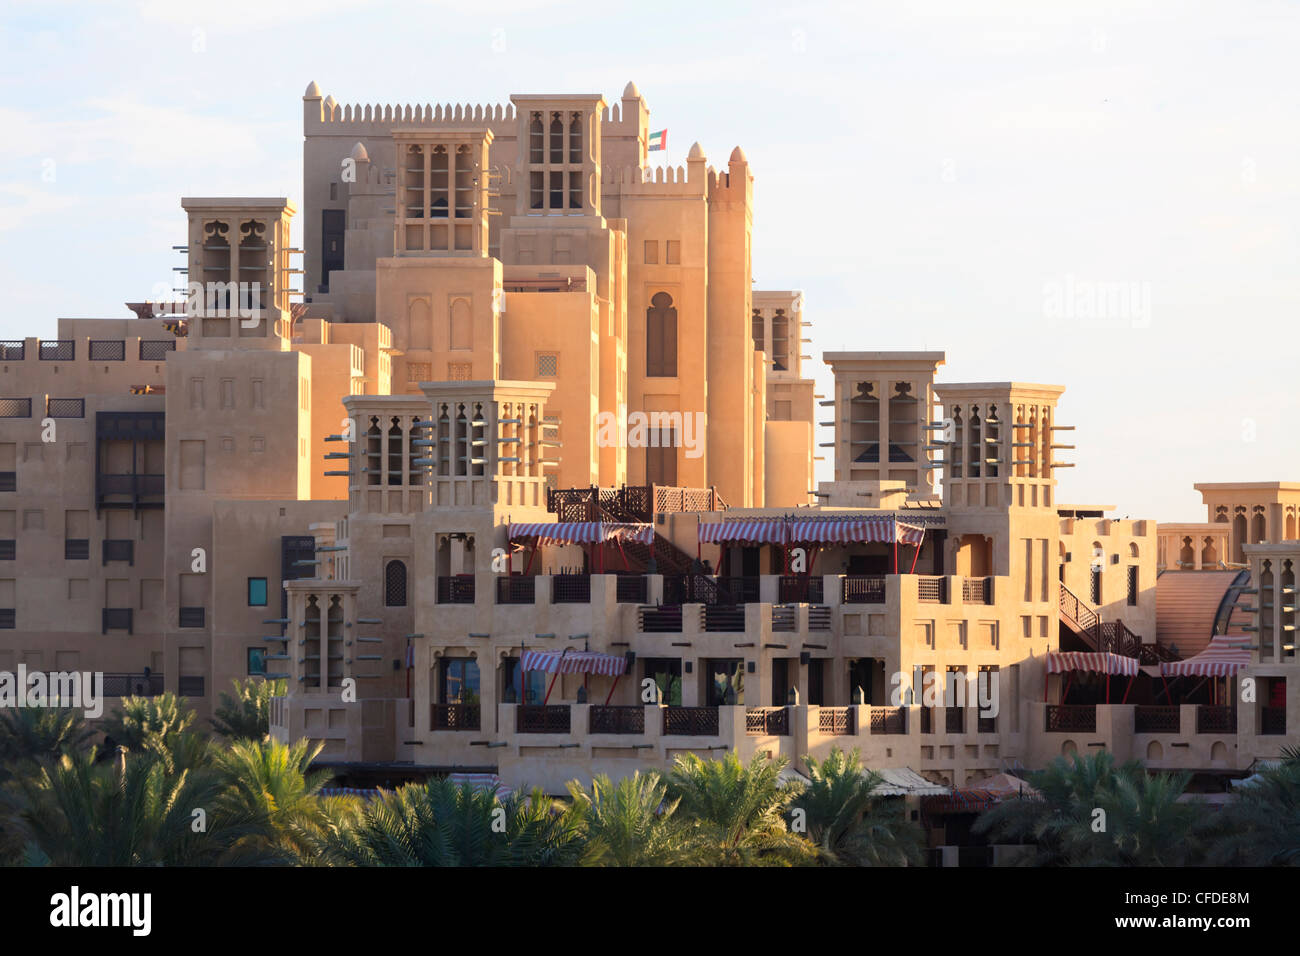 L'architecture arabesque du Madinat Jumeirah, l'hôtel Jumeirah Beach, Dubai, Émirats arabes unis, Moyen Orient Banque D'Images